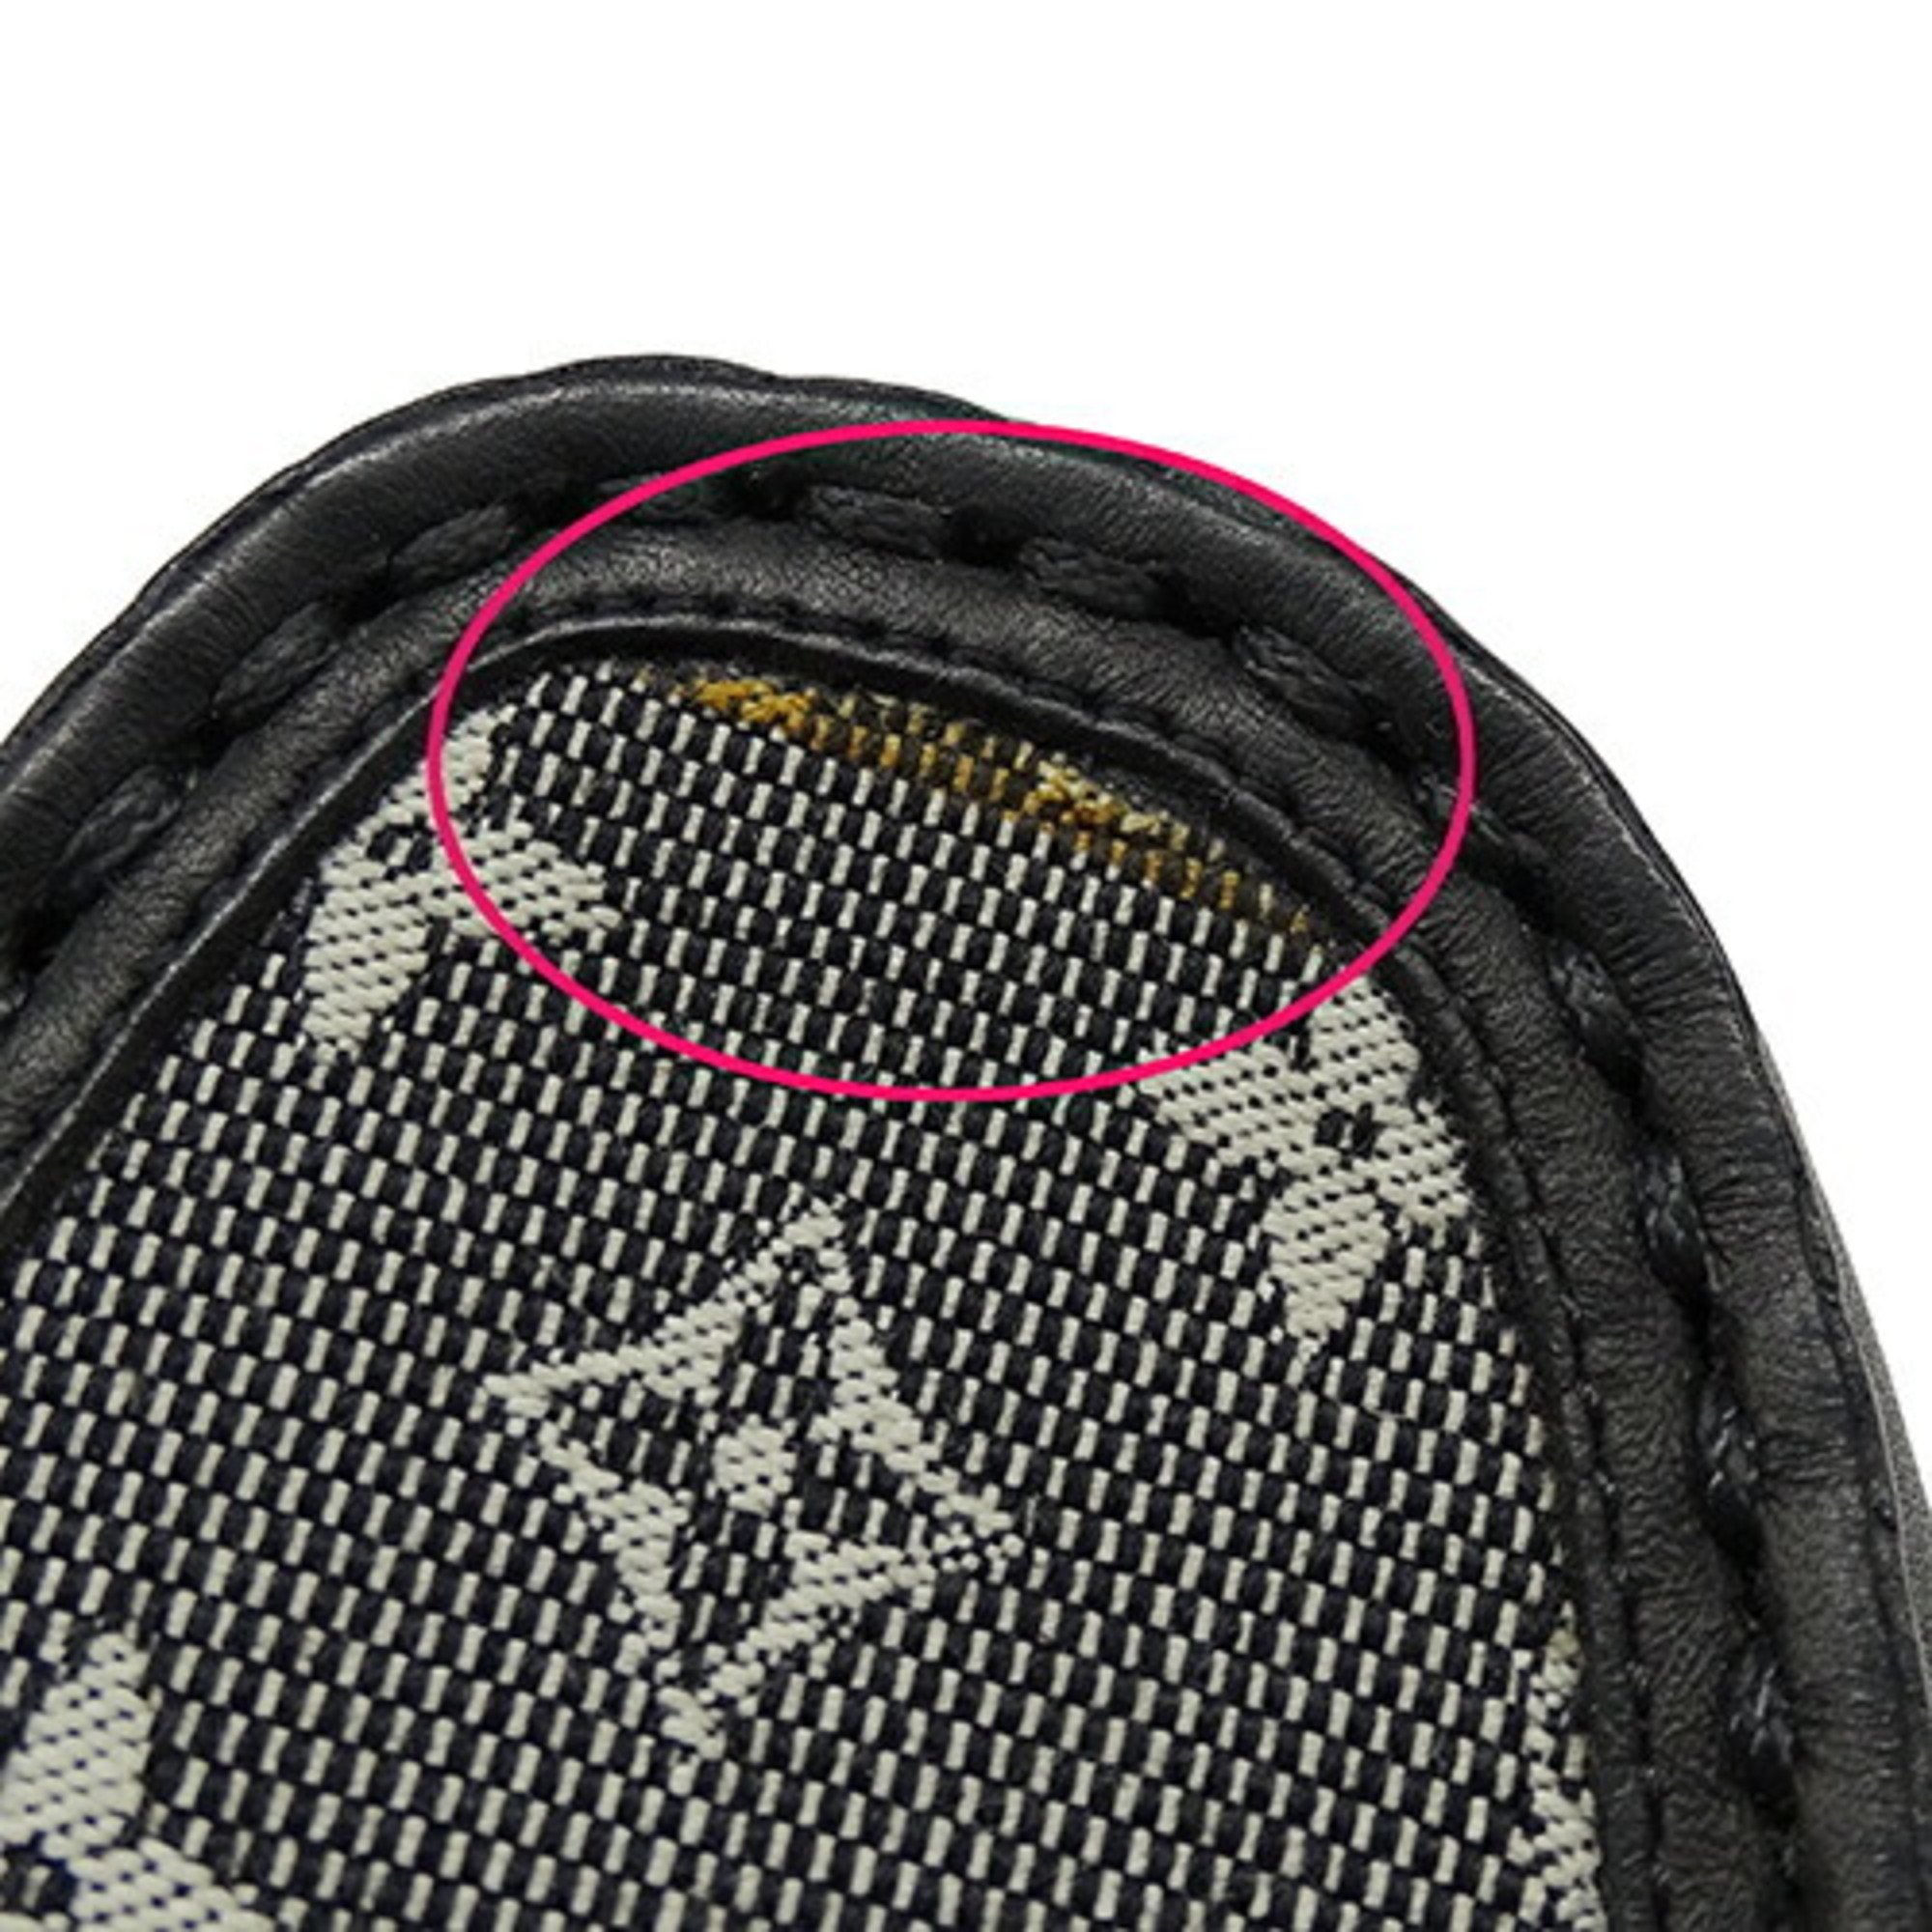 LOUIS VUITTON Shoes Women's Brand Driving Monogram Mini Leather Canvas Black 34 1/2 Approx. 21.5cm